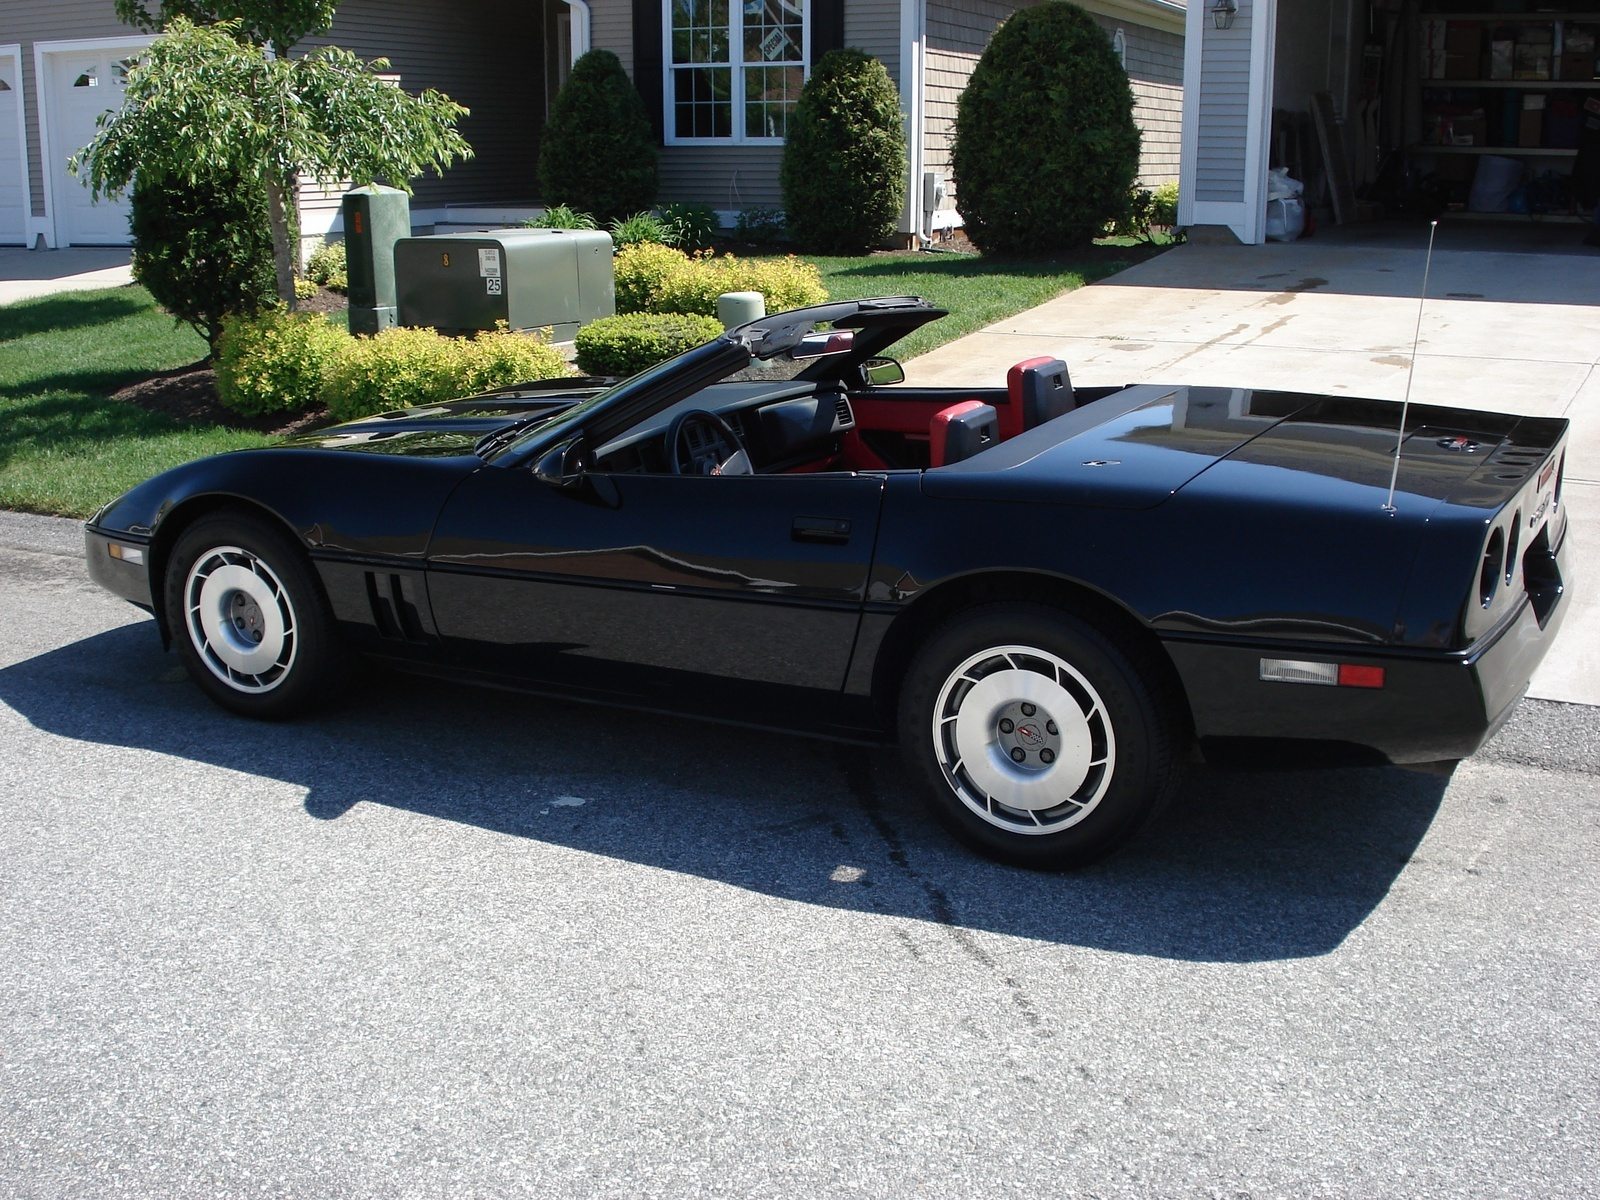 1989 Corvette | | CorvSport.com.